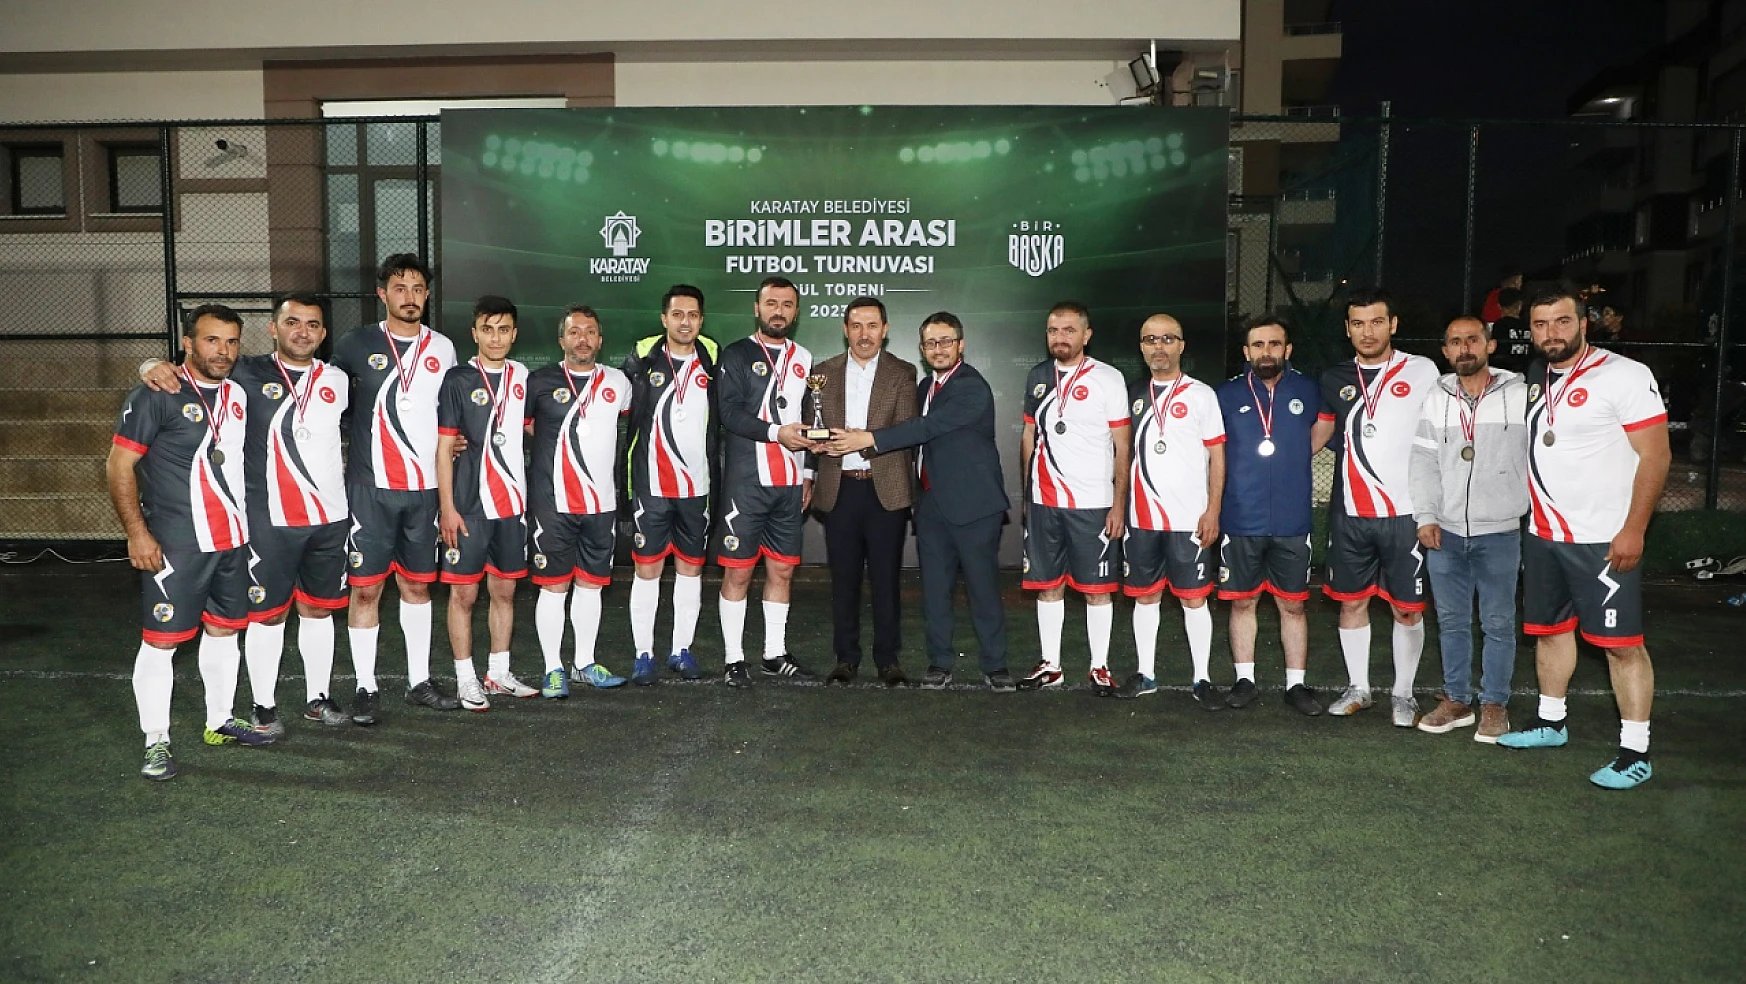 Karatay Belediyesi Birimler Arası Futbol Turnuvası sona erdi